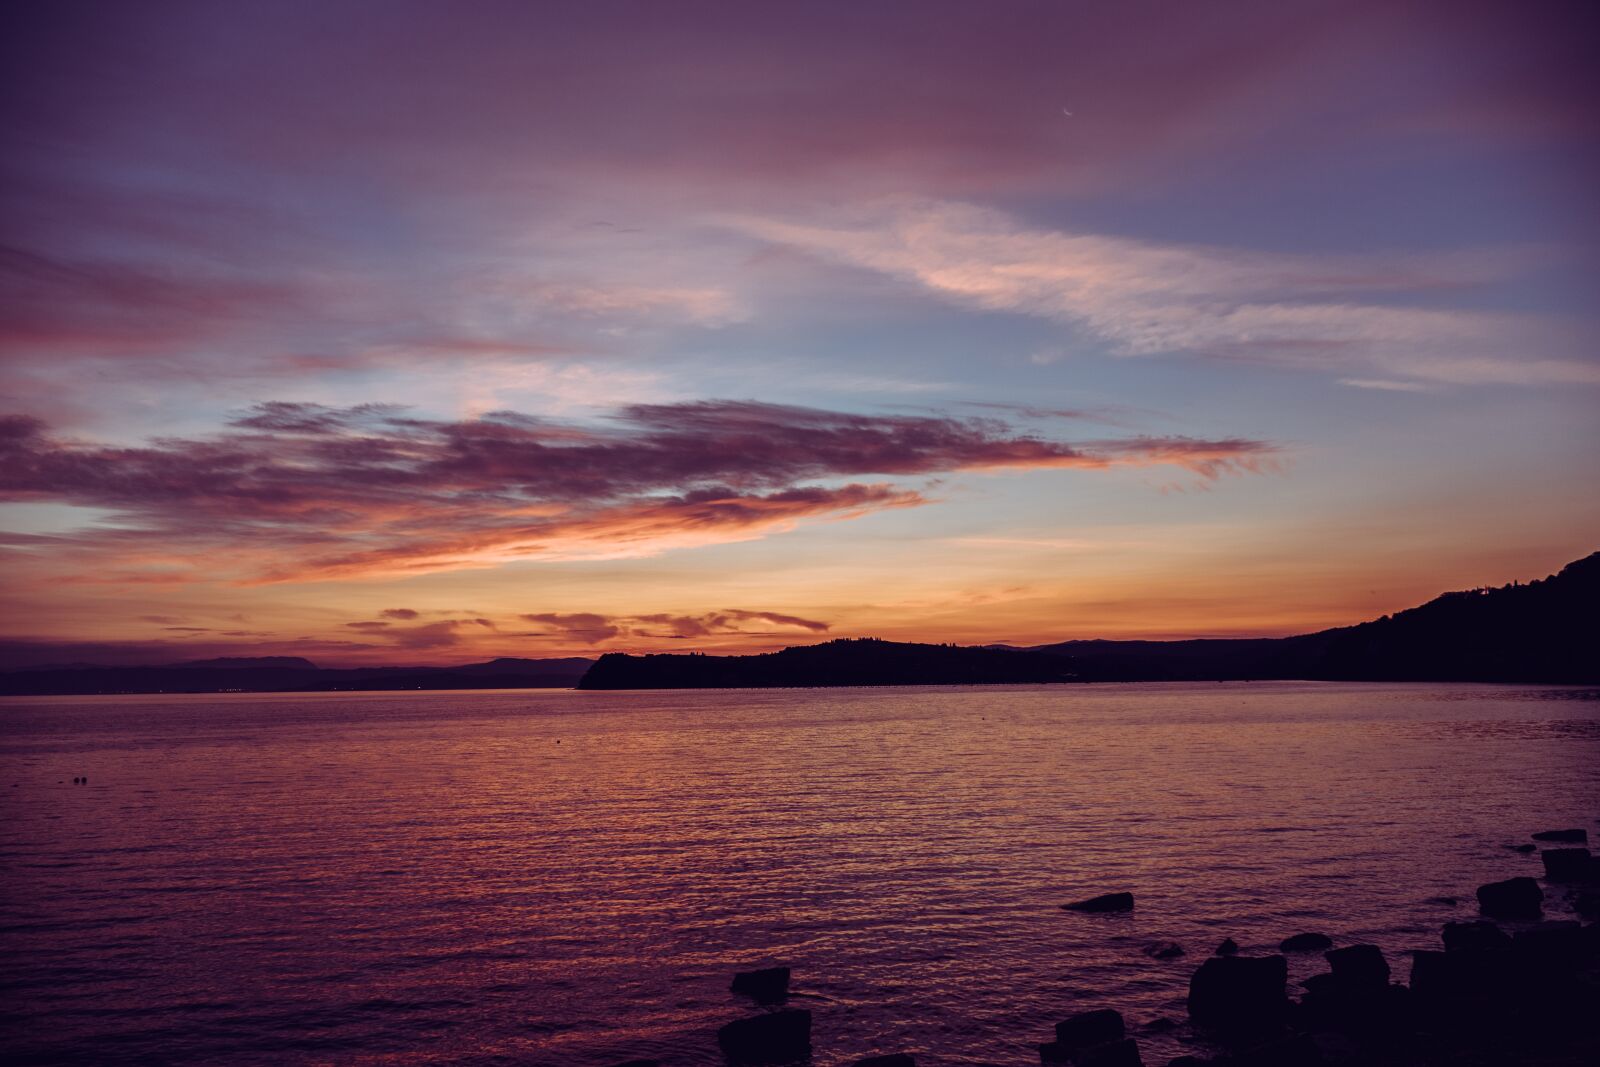 Sony a6500 sample photo. Sunset, seaside, sunrise photography